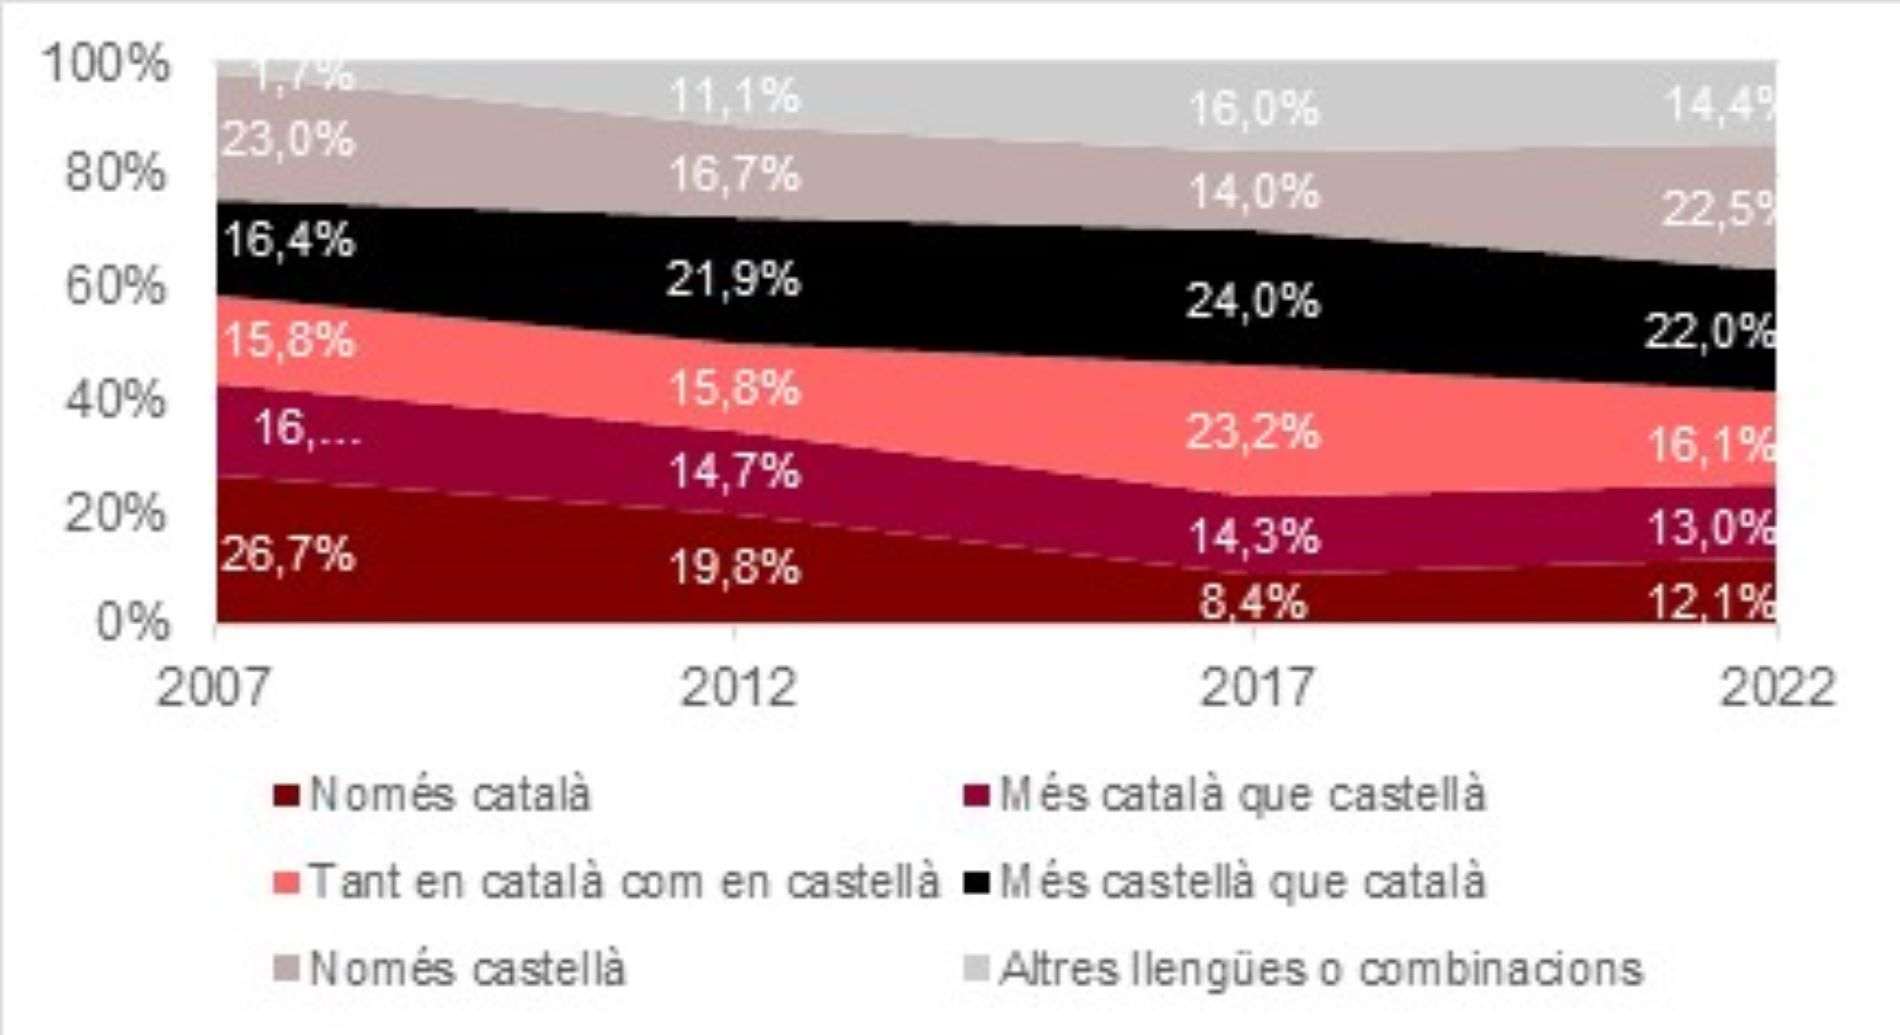 Grafic usos linguistics catala joves / Departament drets socials